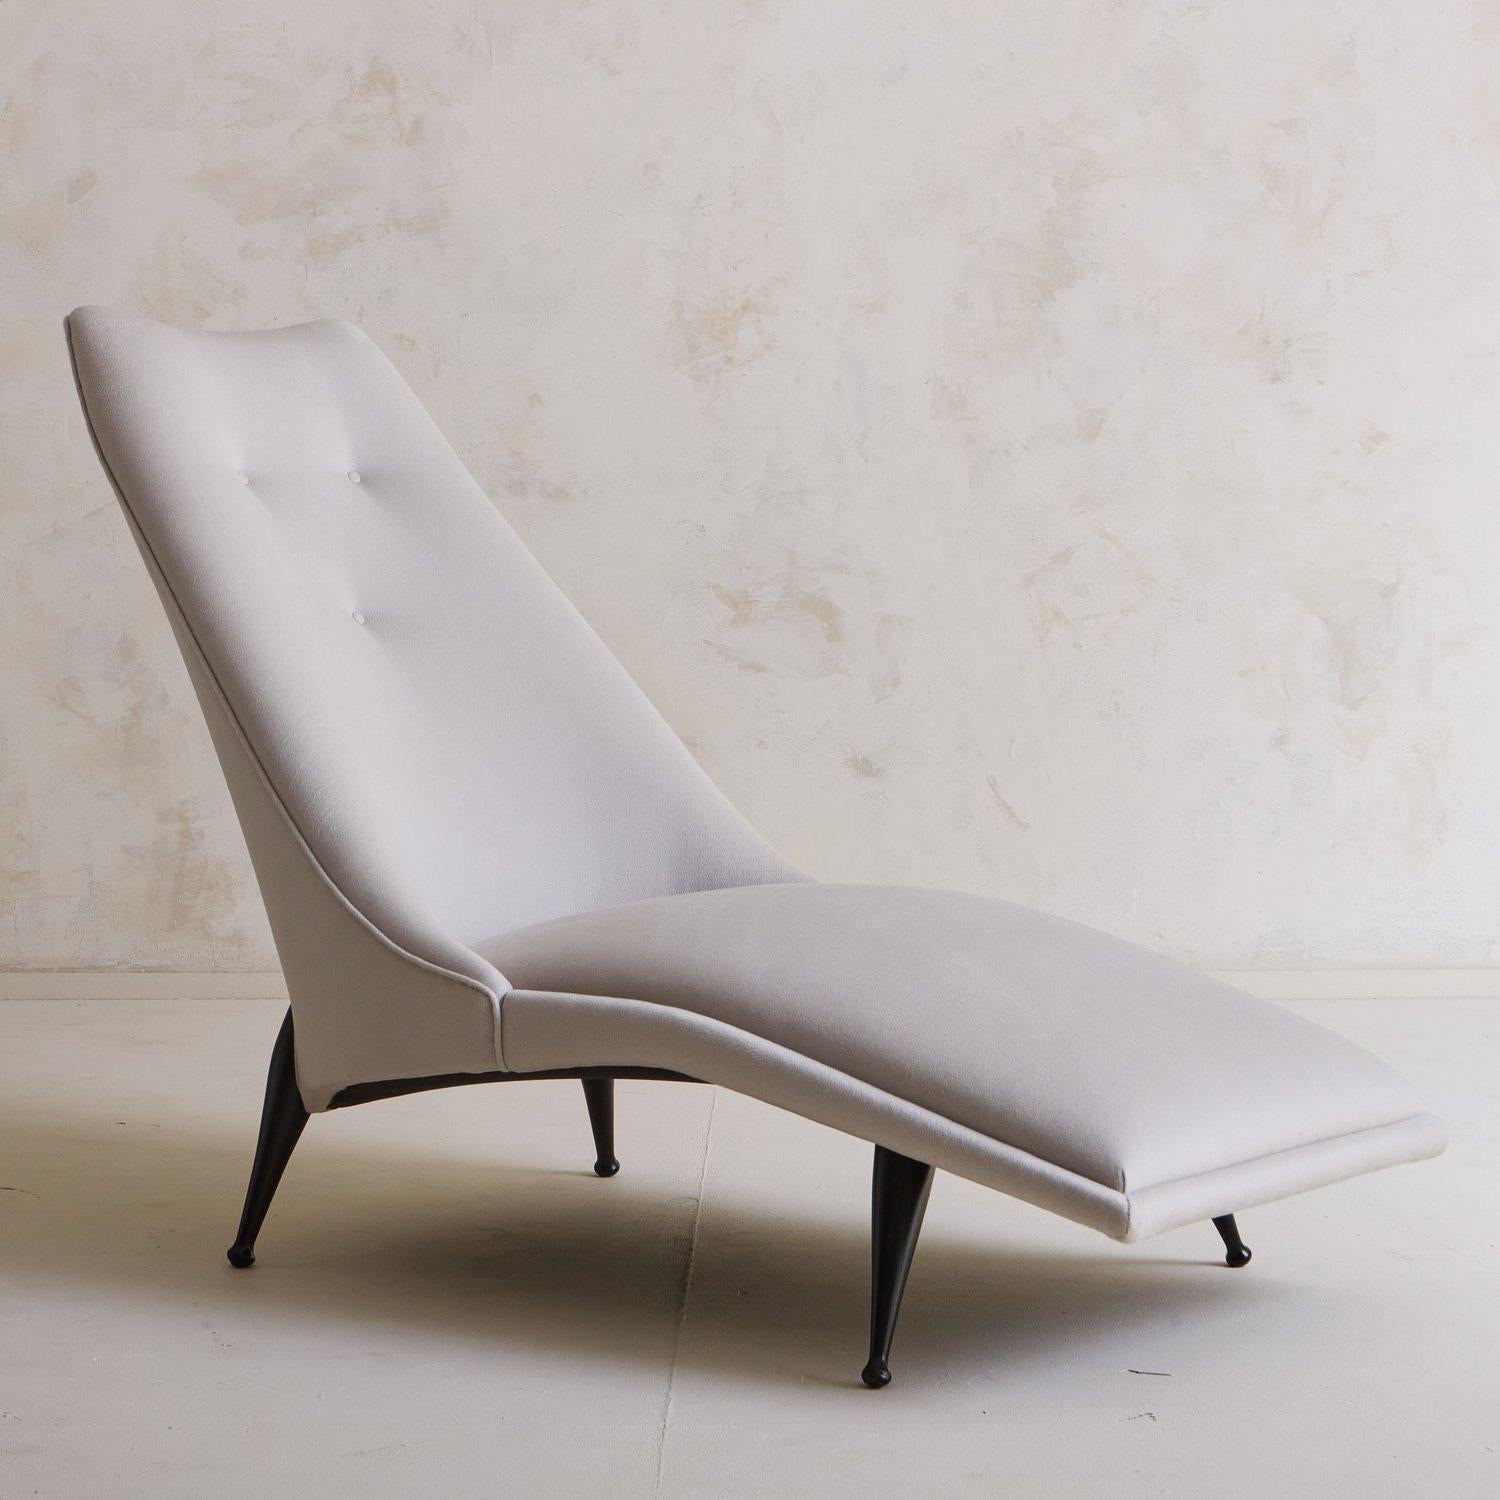 Rare chaise longue 'Beautiful Dreamer' conçue par Ben Seibel dans les années 1950. Ce salon est doté d'une assise allongée et incurvée et d'un dossier aux angles prononcés, avec trois touffes et des détails en trépointe. Il a été récemment retapissé